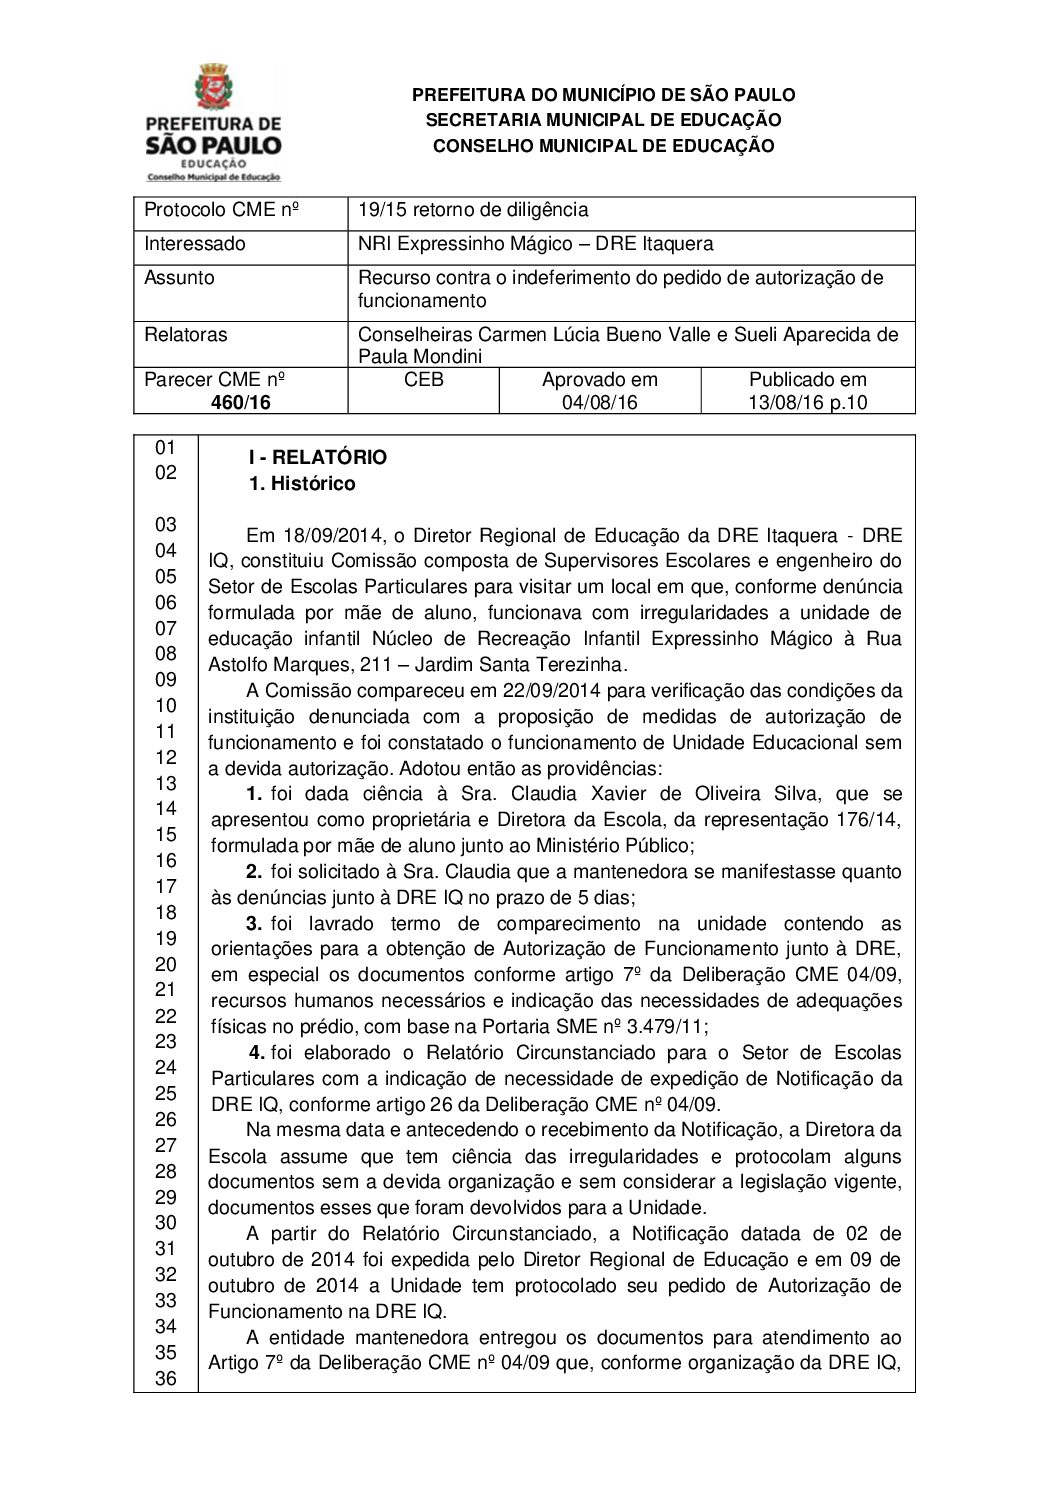 Parecer CME nº 460/2016 - NRI Expressinho Mágico (DRE Itaquera) - Recurso contra o indeferimento do pedido de autorização de funcionamento